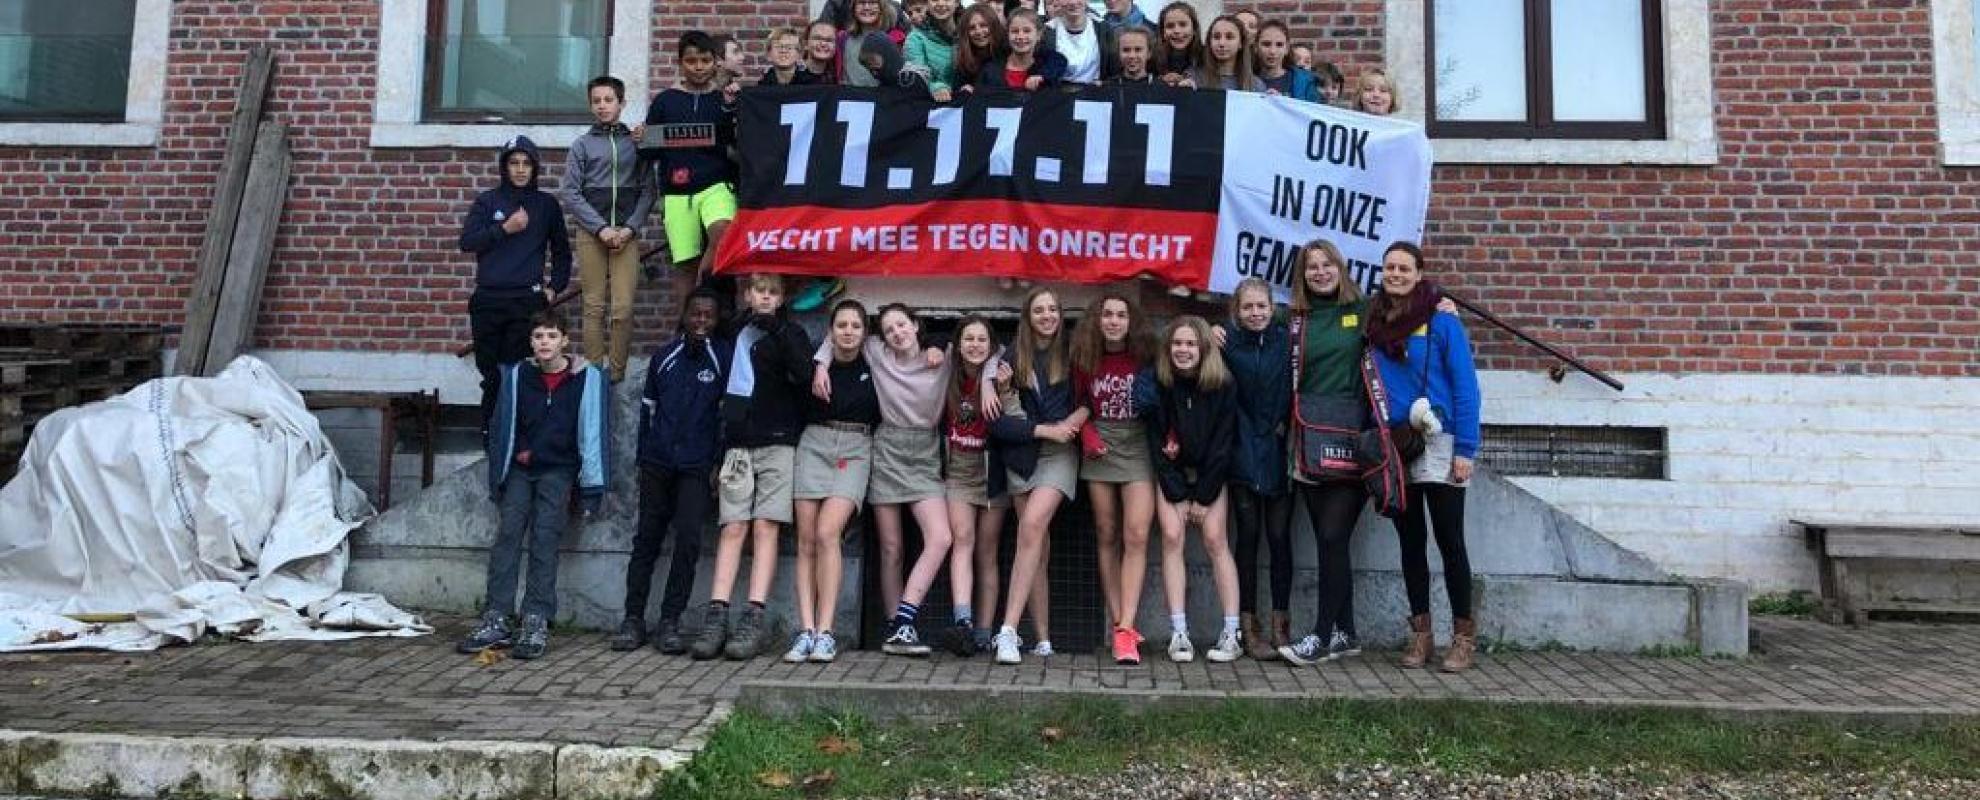 CHiro in Hoegaarden, klaar voor de deur-aan-deur-actie, 11.11.11 campagne 2019